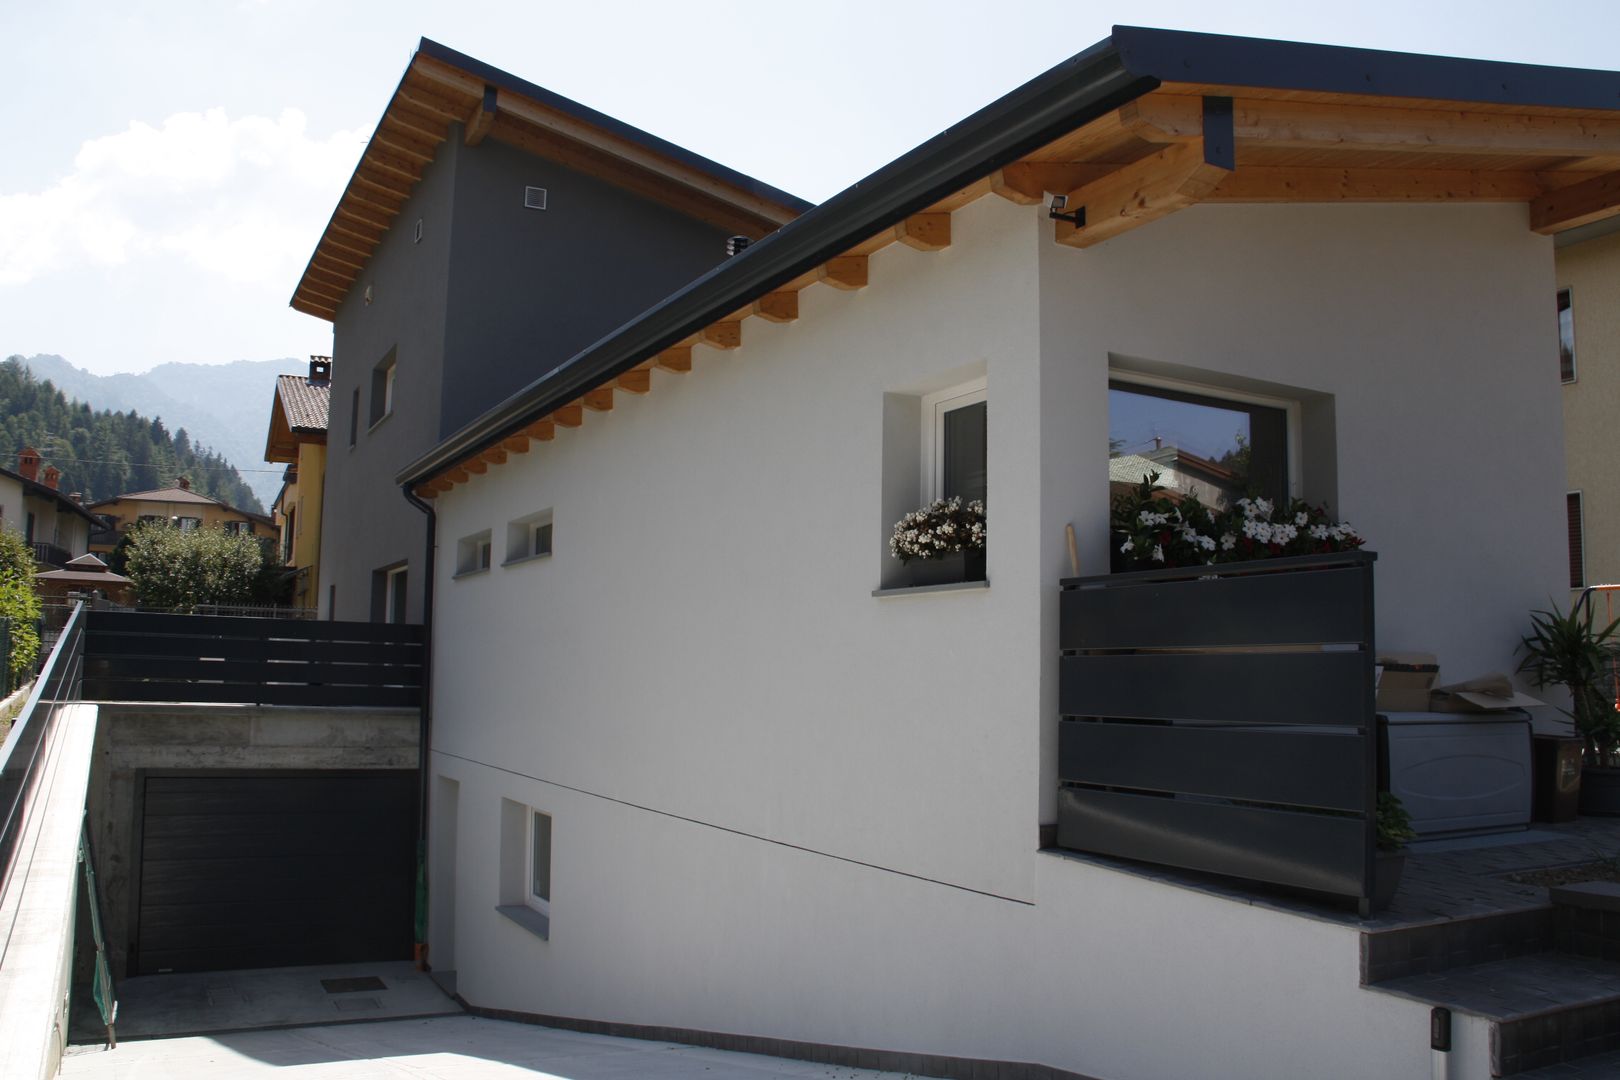 Casa in legno - provincia di Bergamo, BENDOTTI ZAMBONI Tecnici Associati BENDOTTI ZAMBONI Tecnici Associati منازل